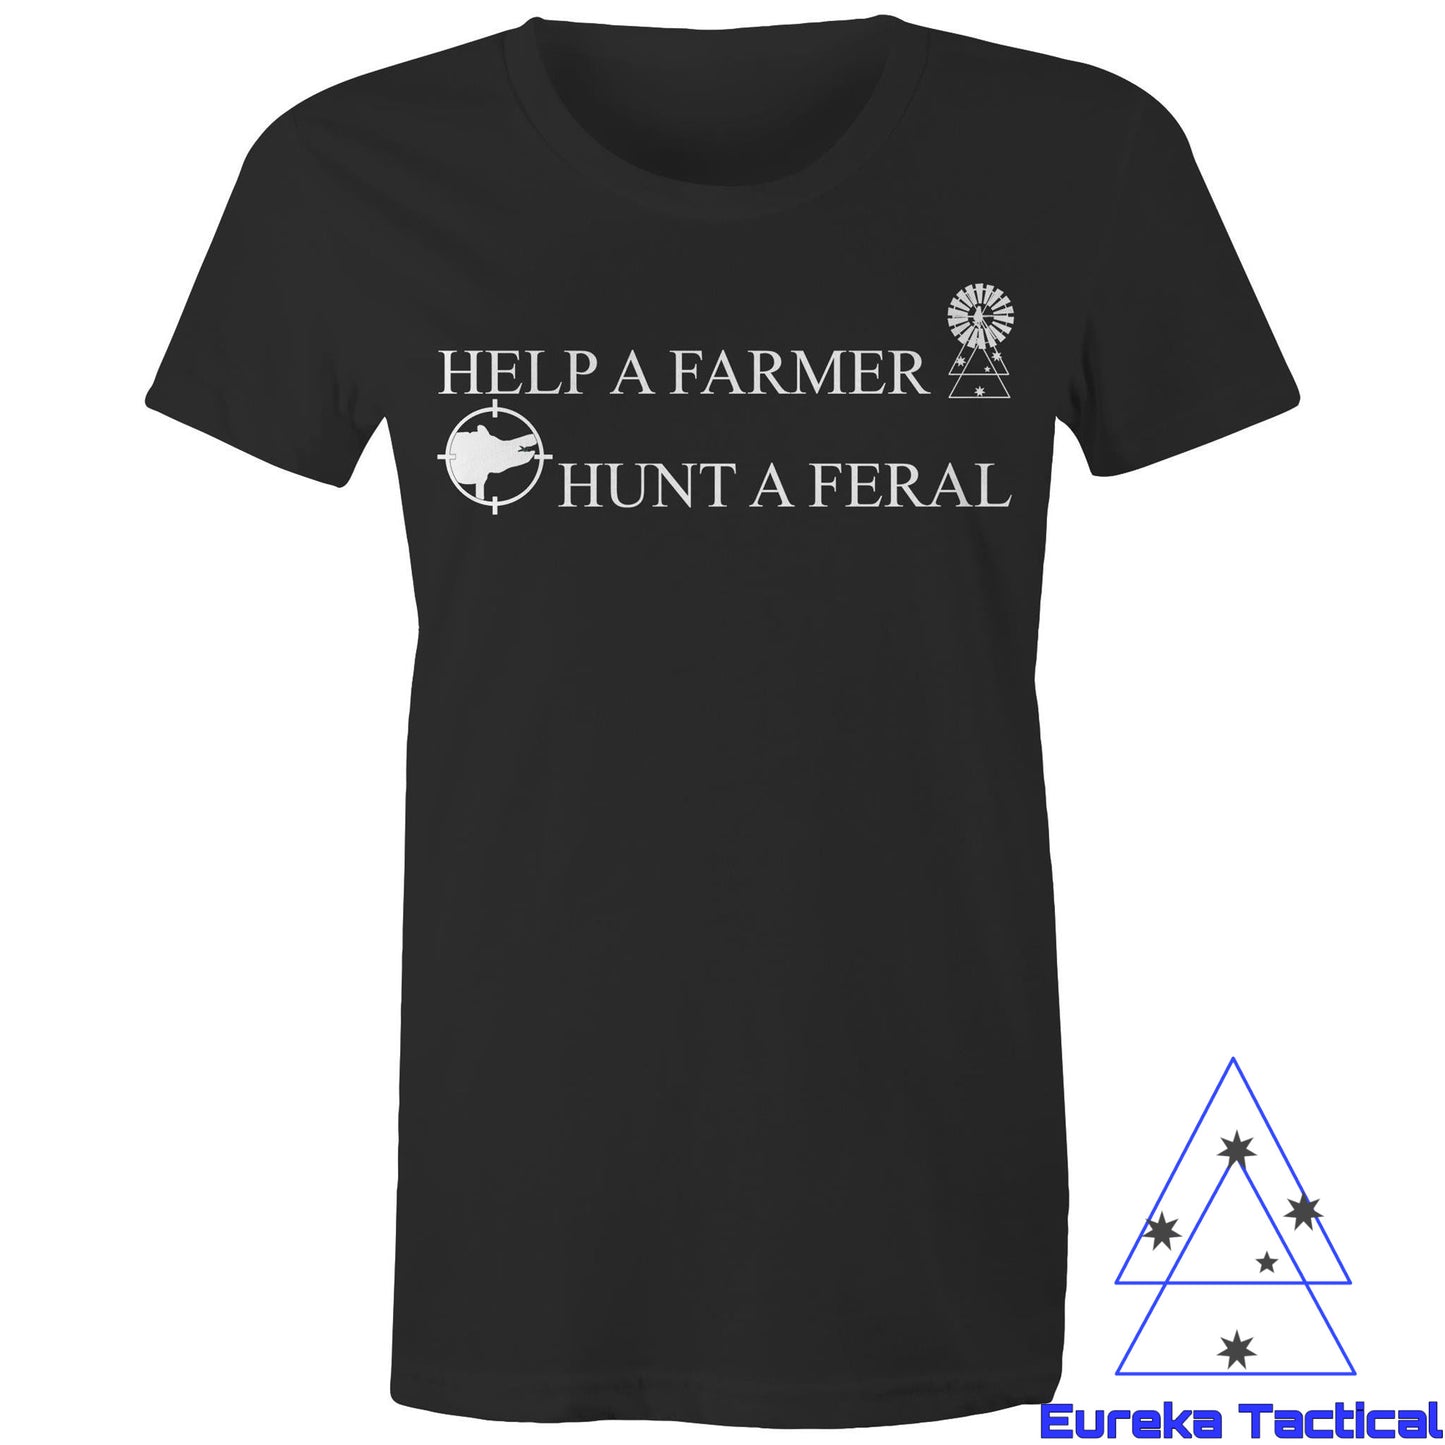 Help a farmer, hunt a feral. Women's AS Colour 100% Cotton Maple Tee